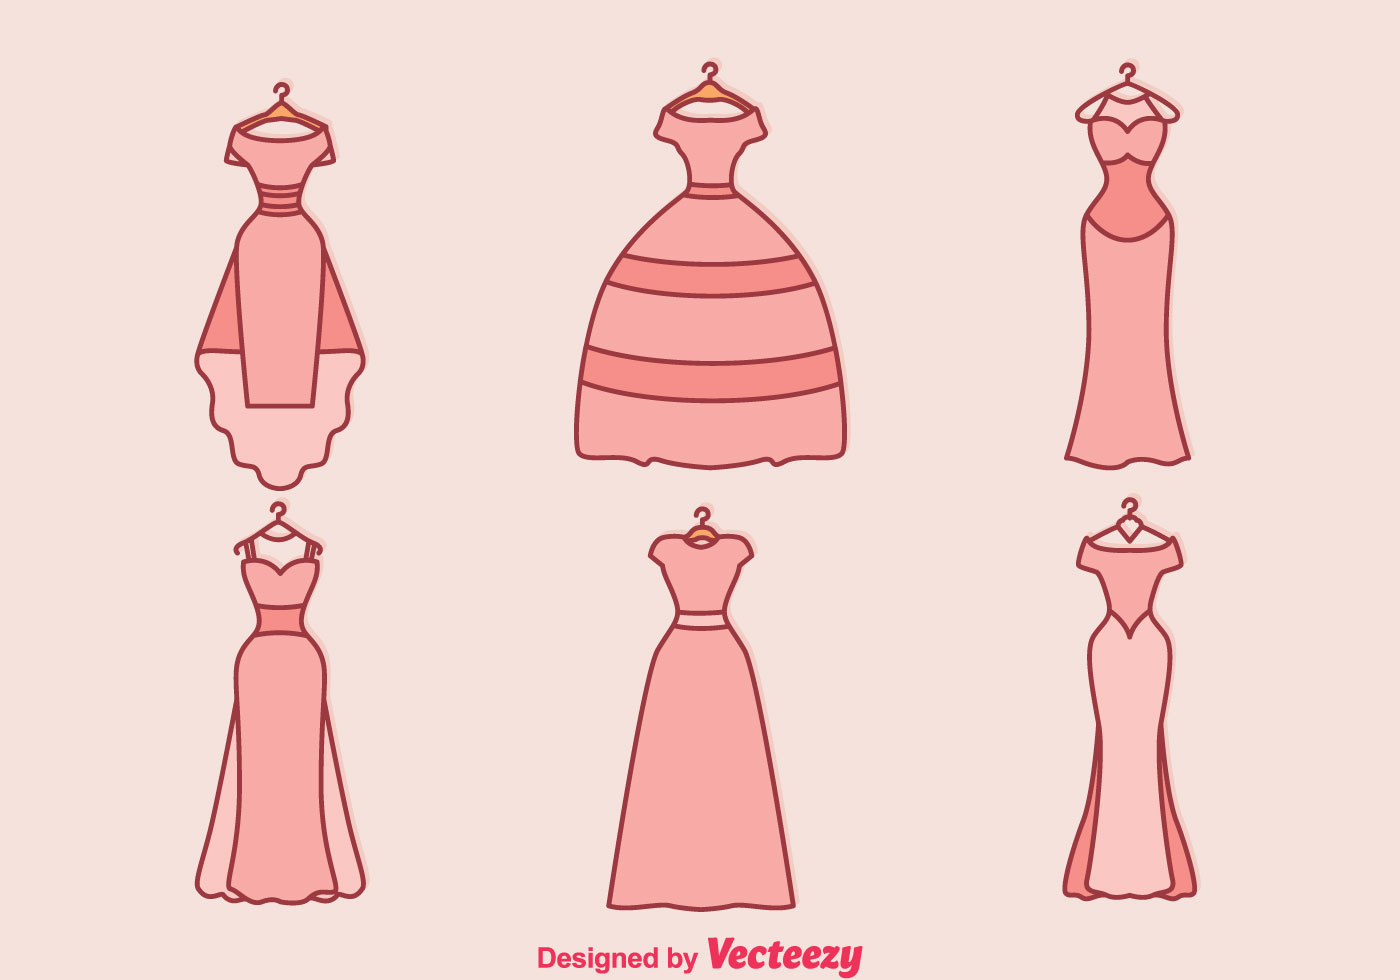 Download Wedding Dress Vector - Download Free Vector Art, Stock ...